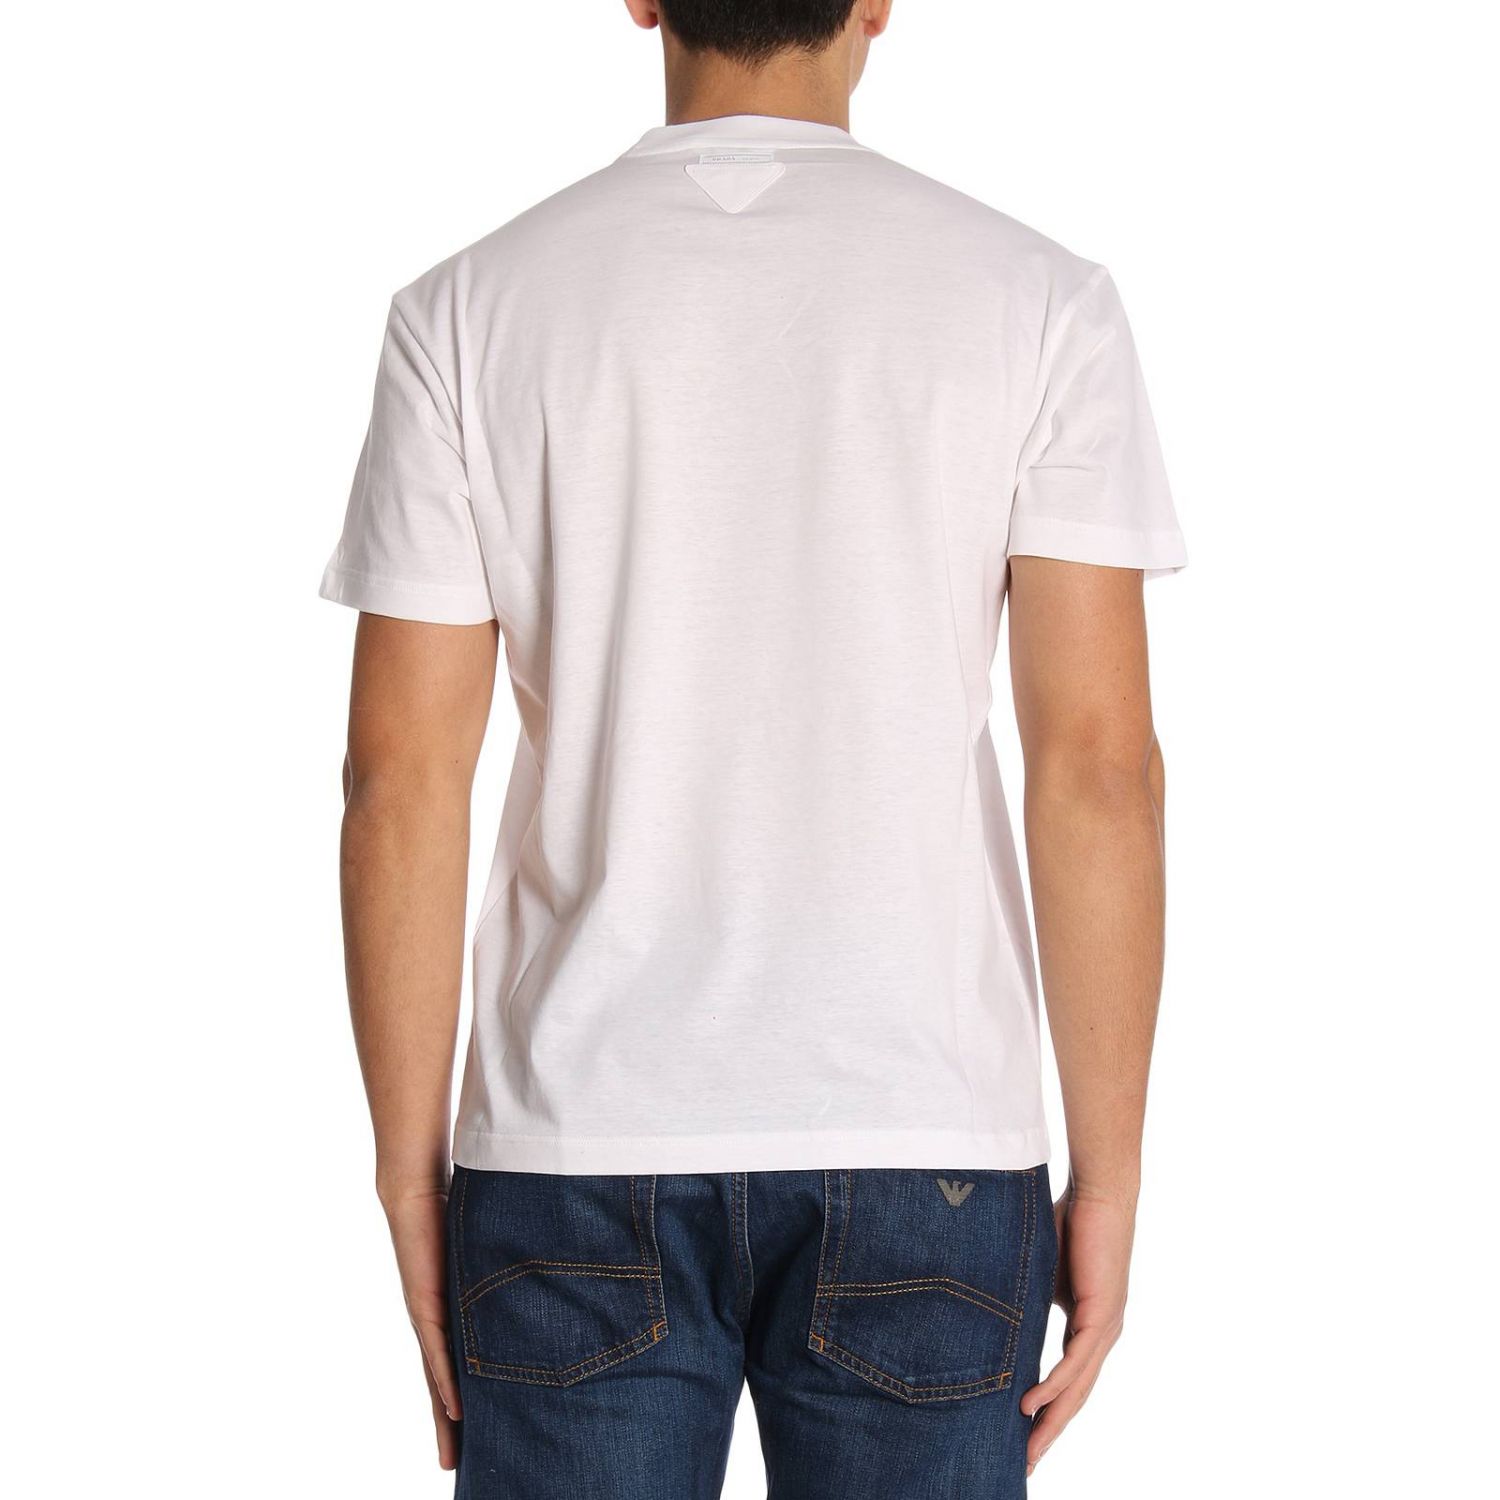 Prada Outlet: T-shirt men - White | T-Shirt Prada UJN399 1QGC GIGLIO.COM